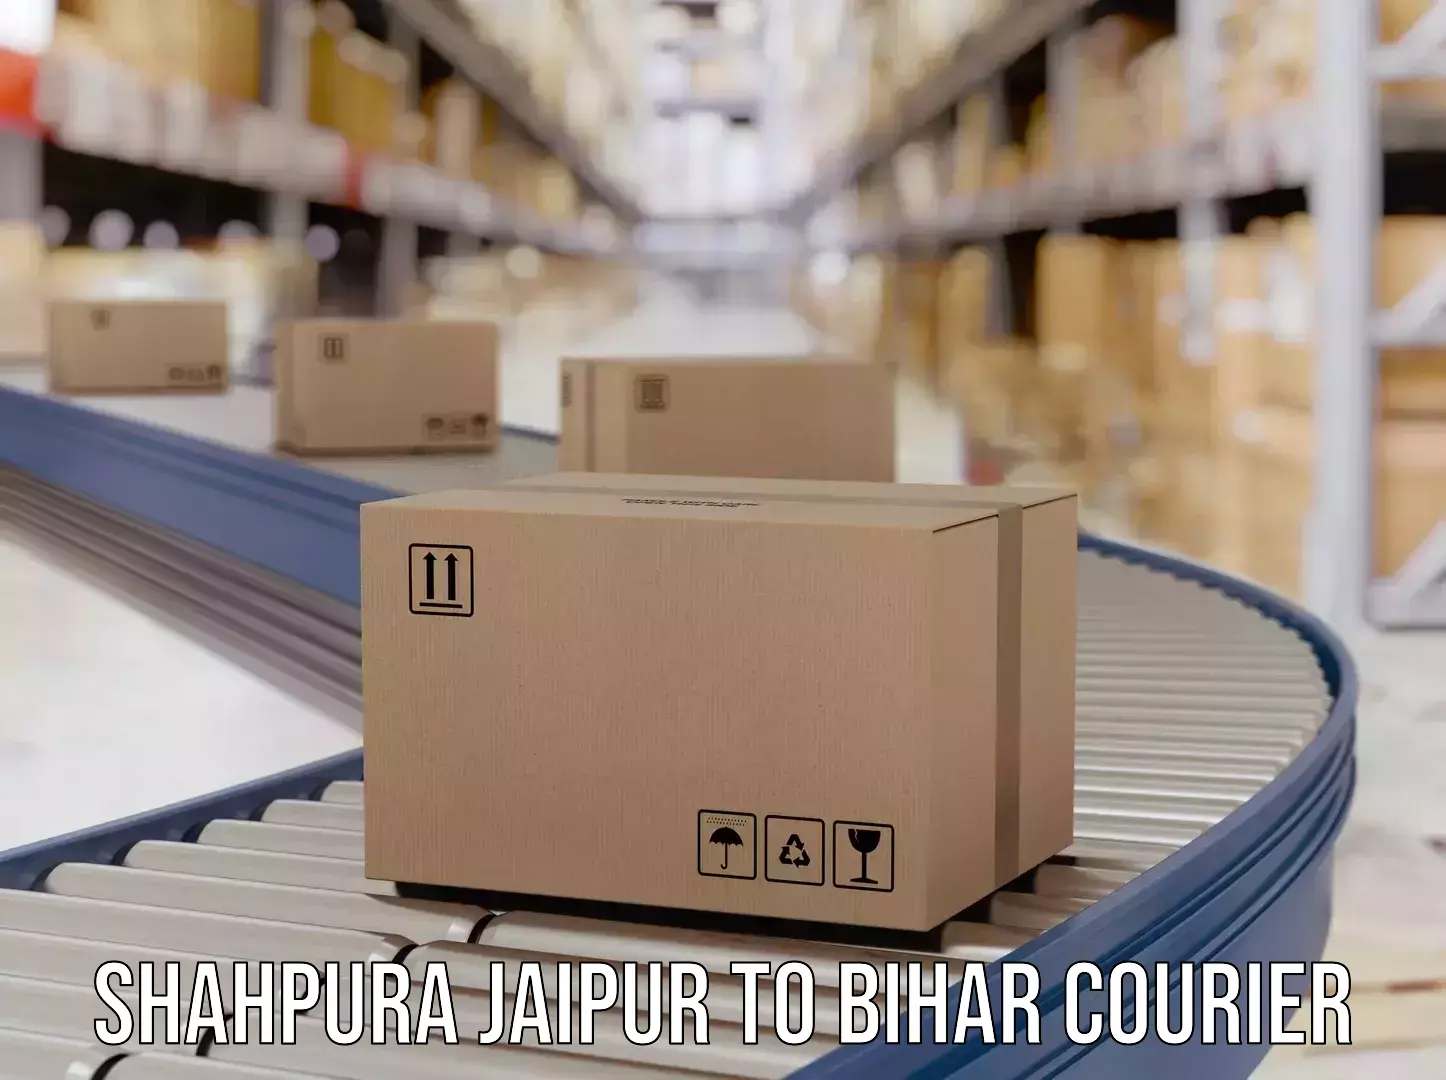 Sustainable courier practices Shahpura Jaipur to Bikramganj